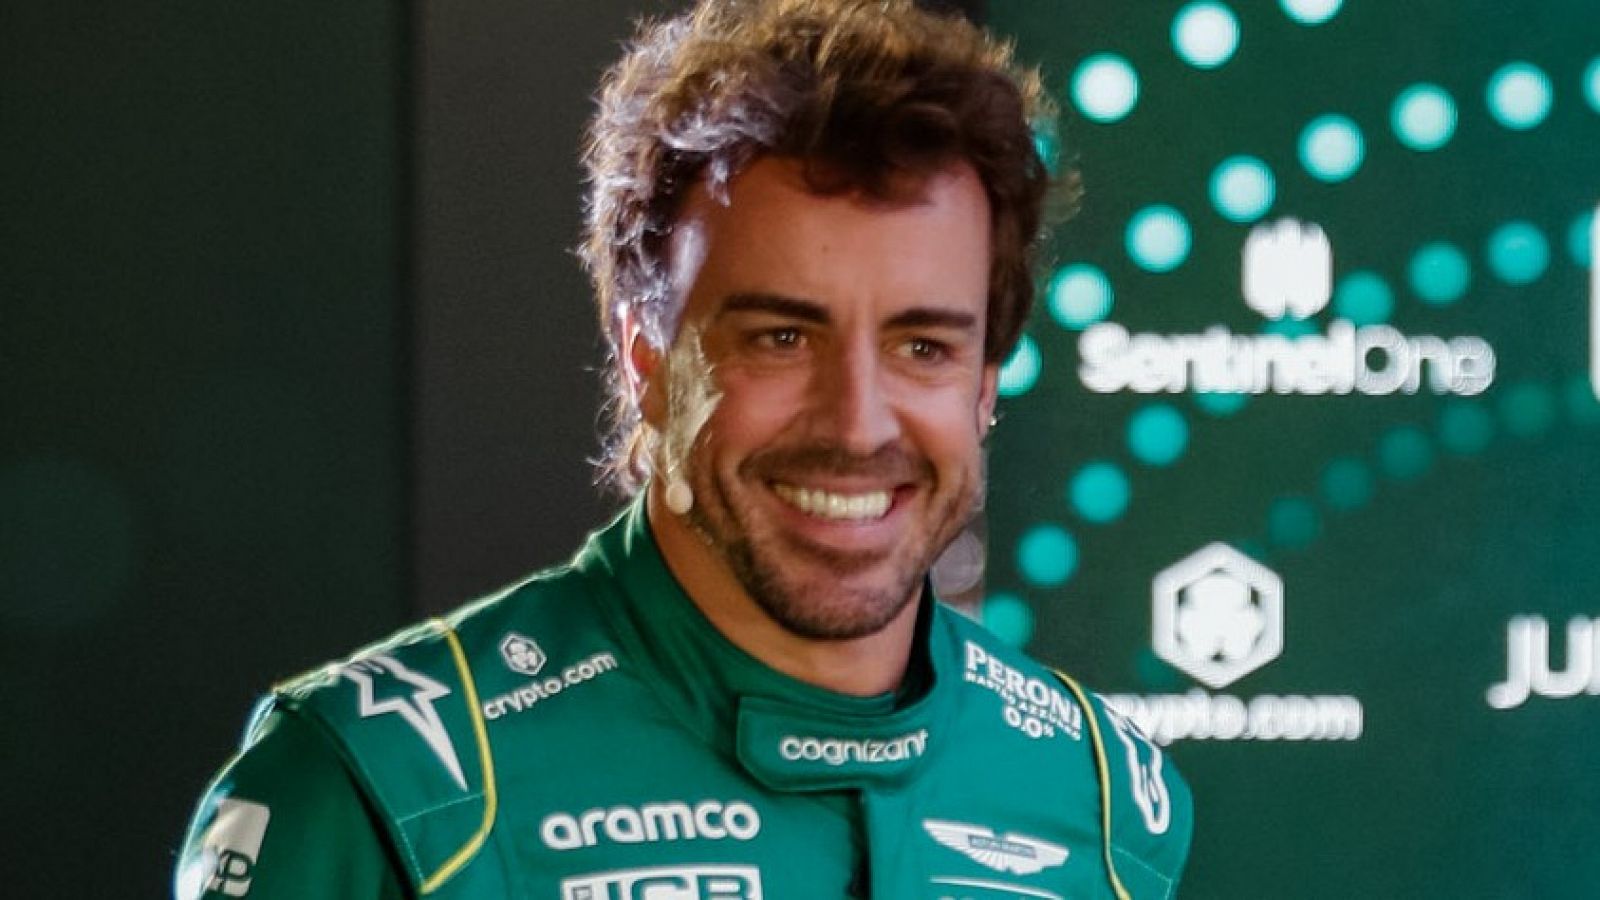 La Misión de Alonso, ganar su carrera 33